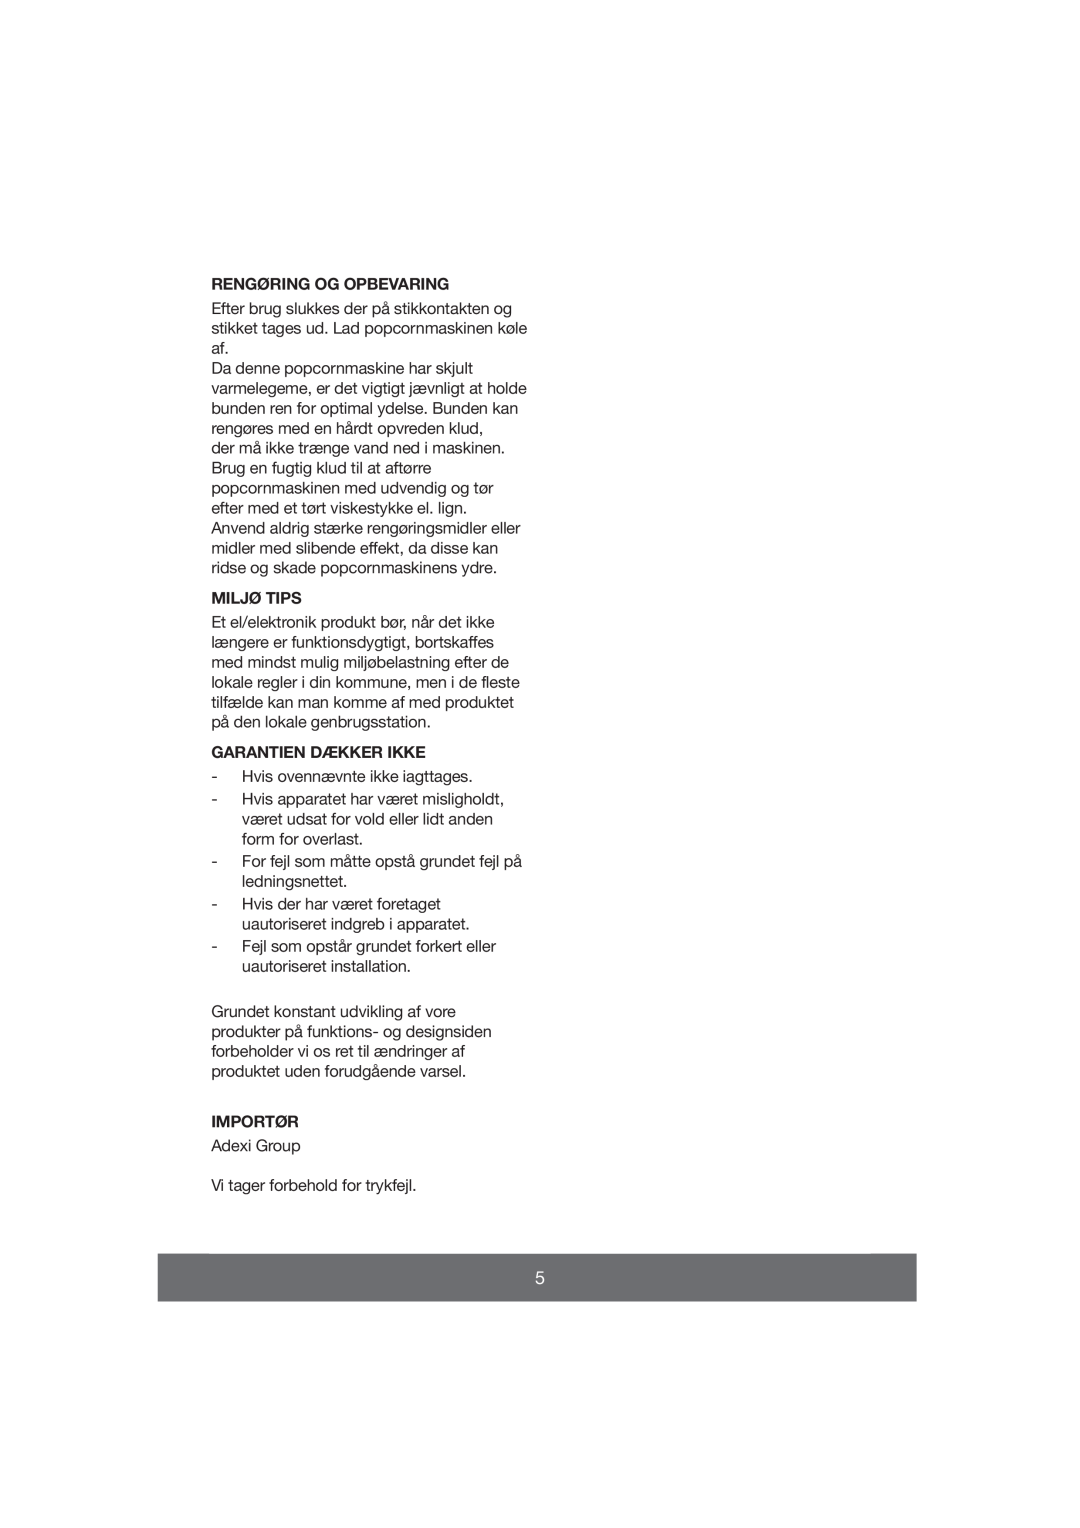 Melissa 643-038 manual Rengøring Og Opbevaring, Miljø Tips, Garantien Dækker Ikke, Importør 